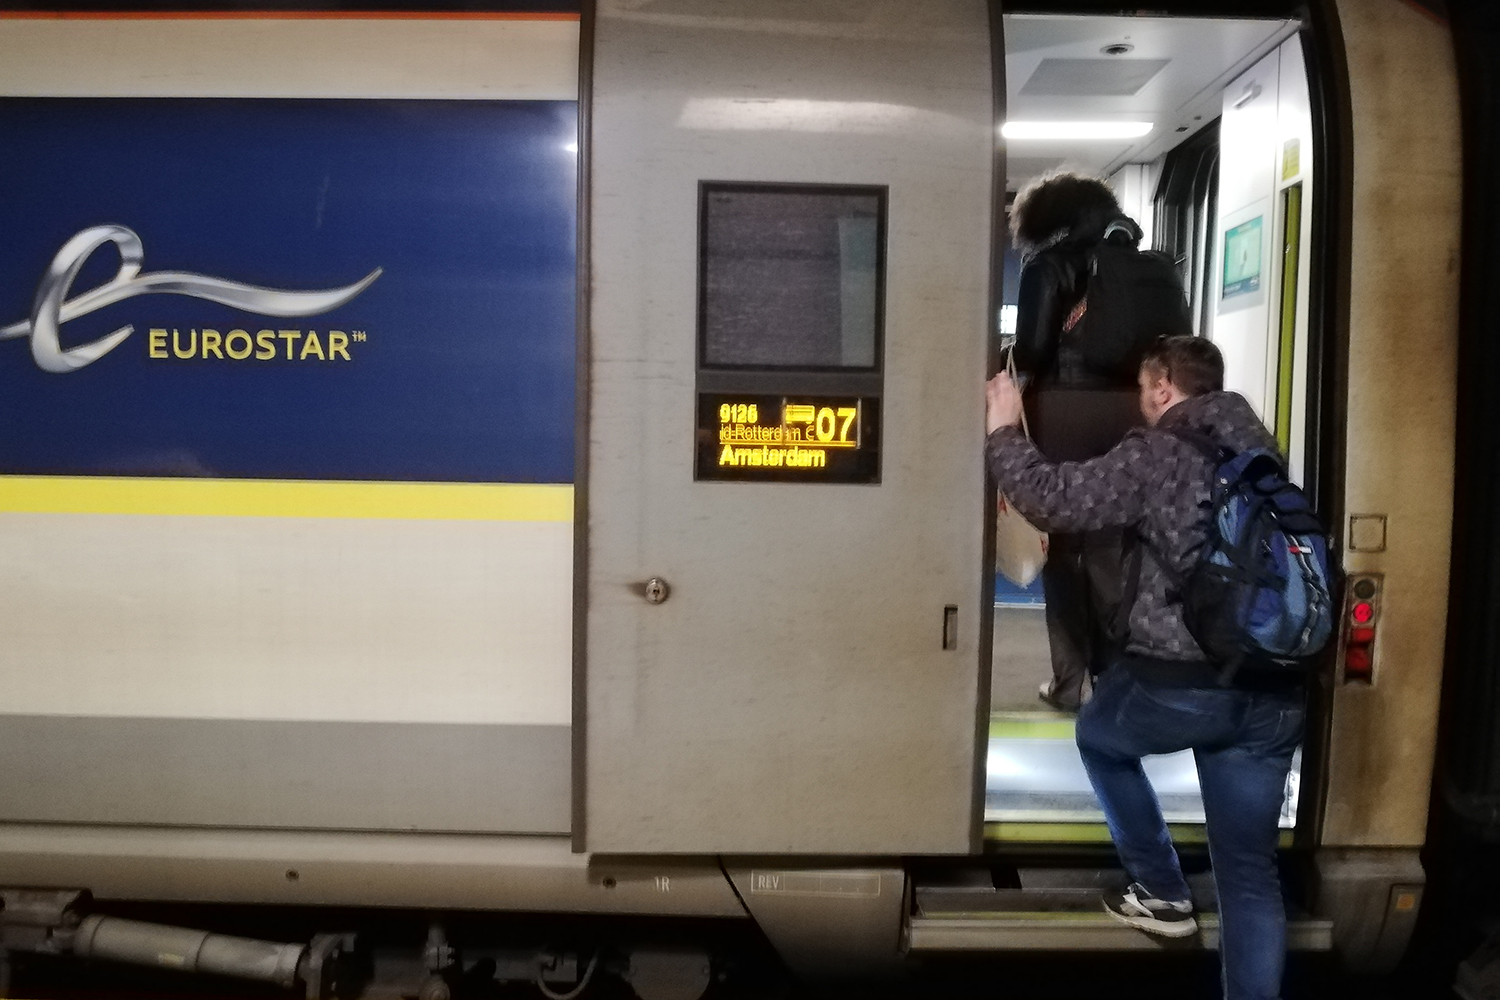 Départ de la gare Lille Europe. En raison du conflit social qui mobilise notamment des travailleurs de la SNCF beaucoup de trains sont annulés. Sidonie embarque dans un Eurostar en provenance de Londres et à destination d’Amsterdam. 